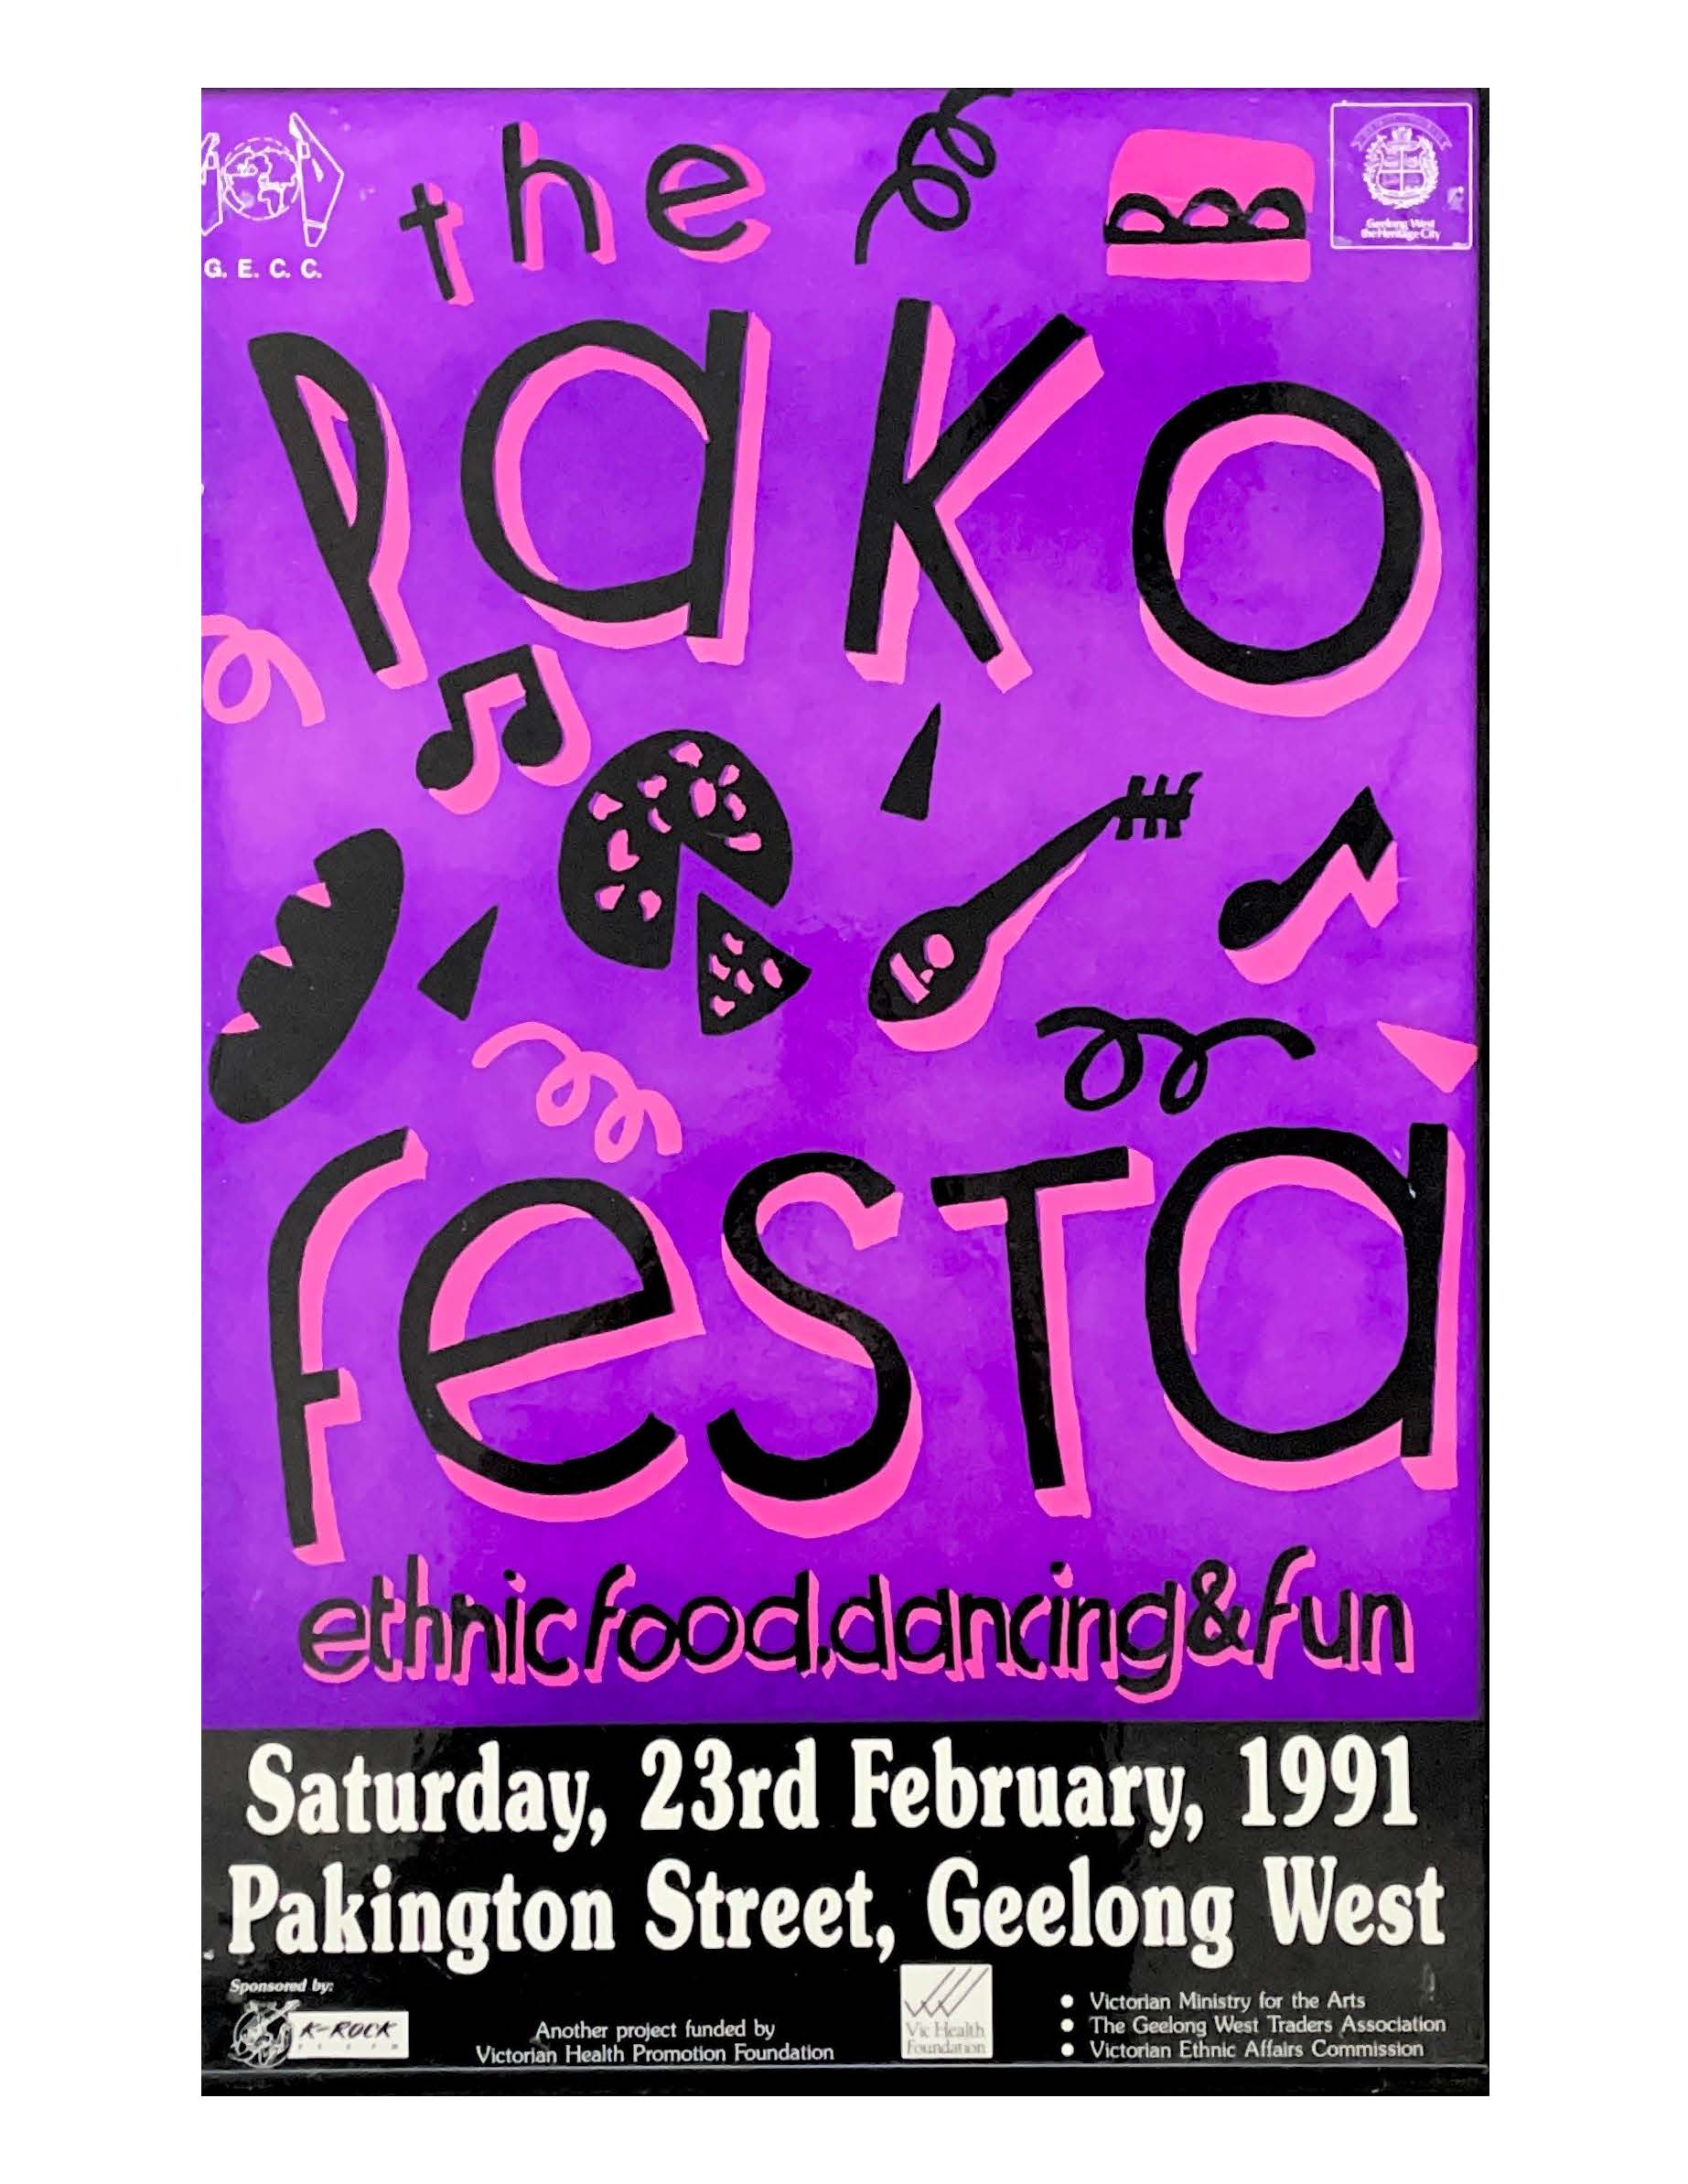 1991 Pako Festa Poster